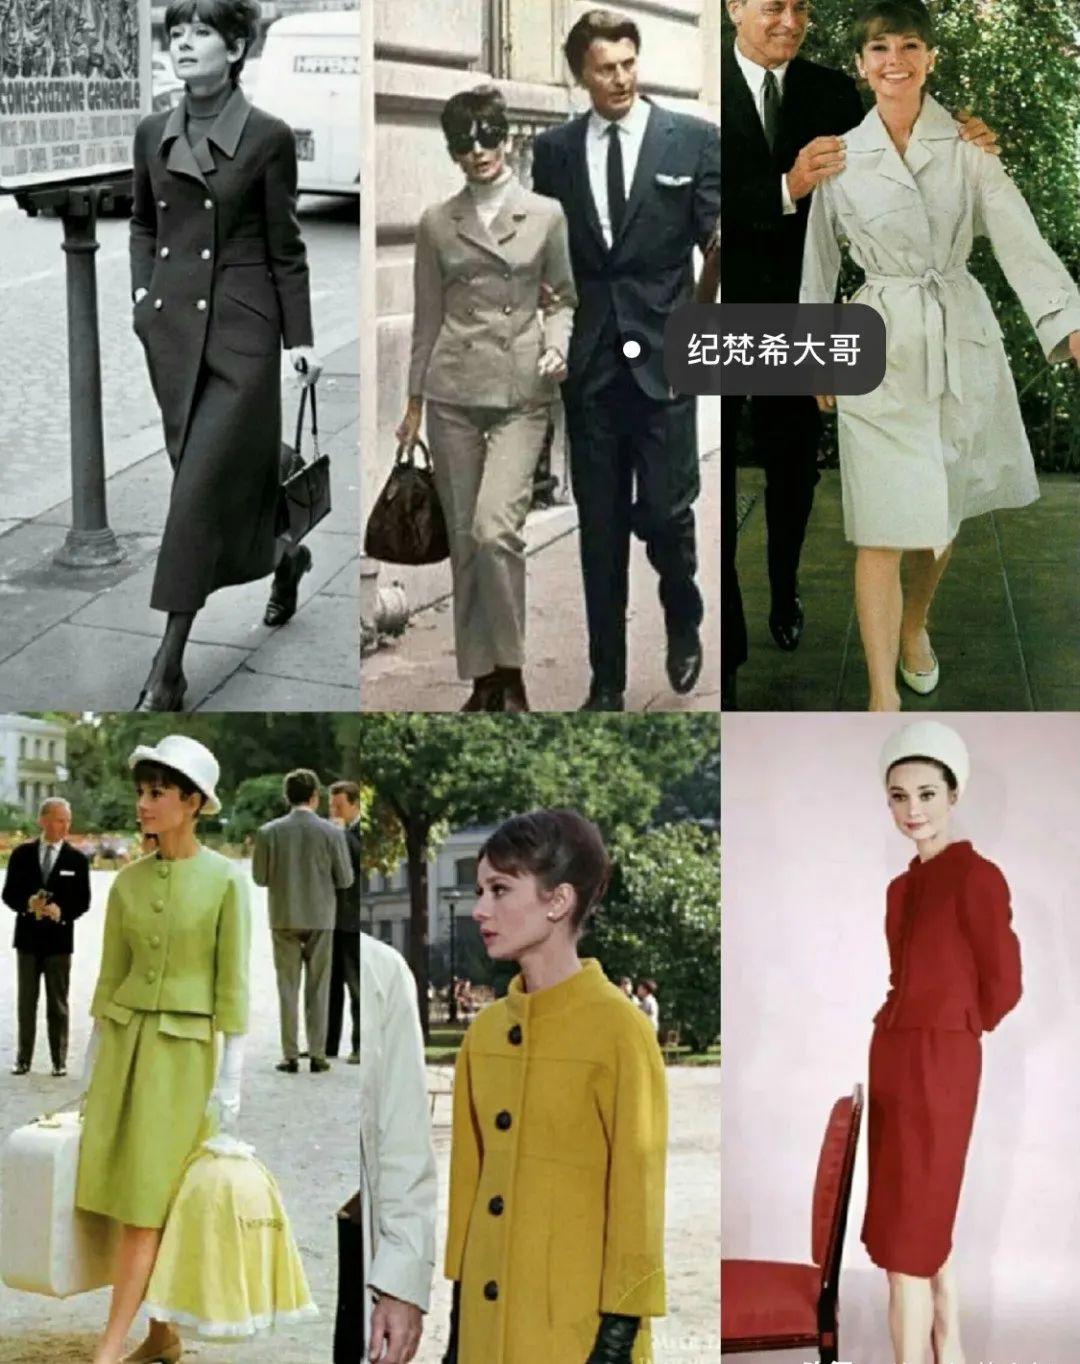 论时尚我们不一定比得上50年代的赫本新潮每一套都想拥有